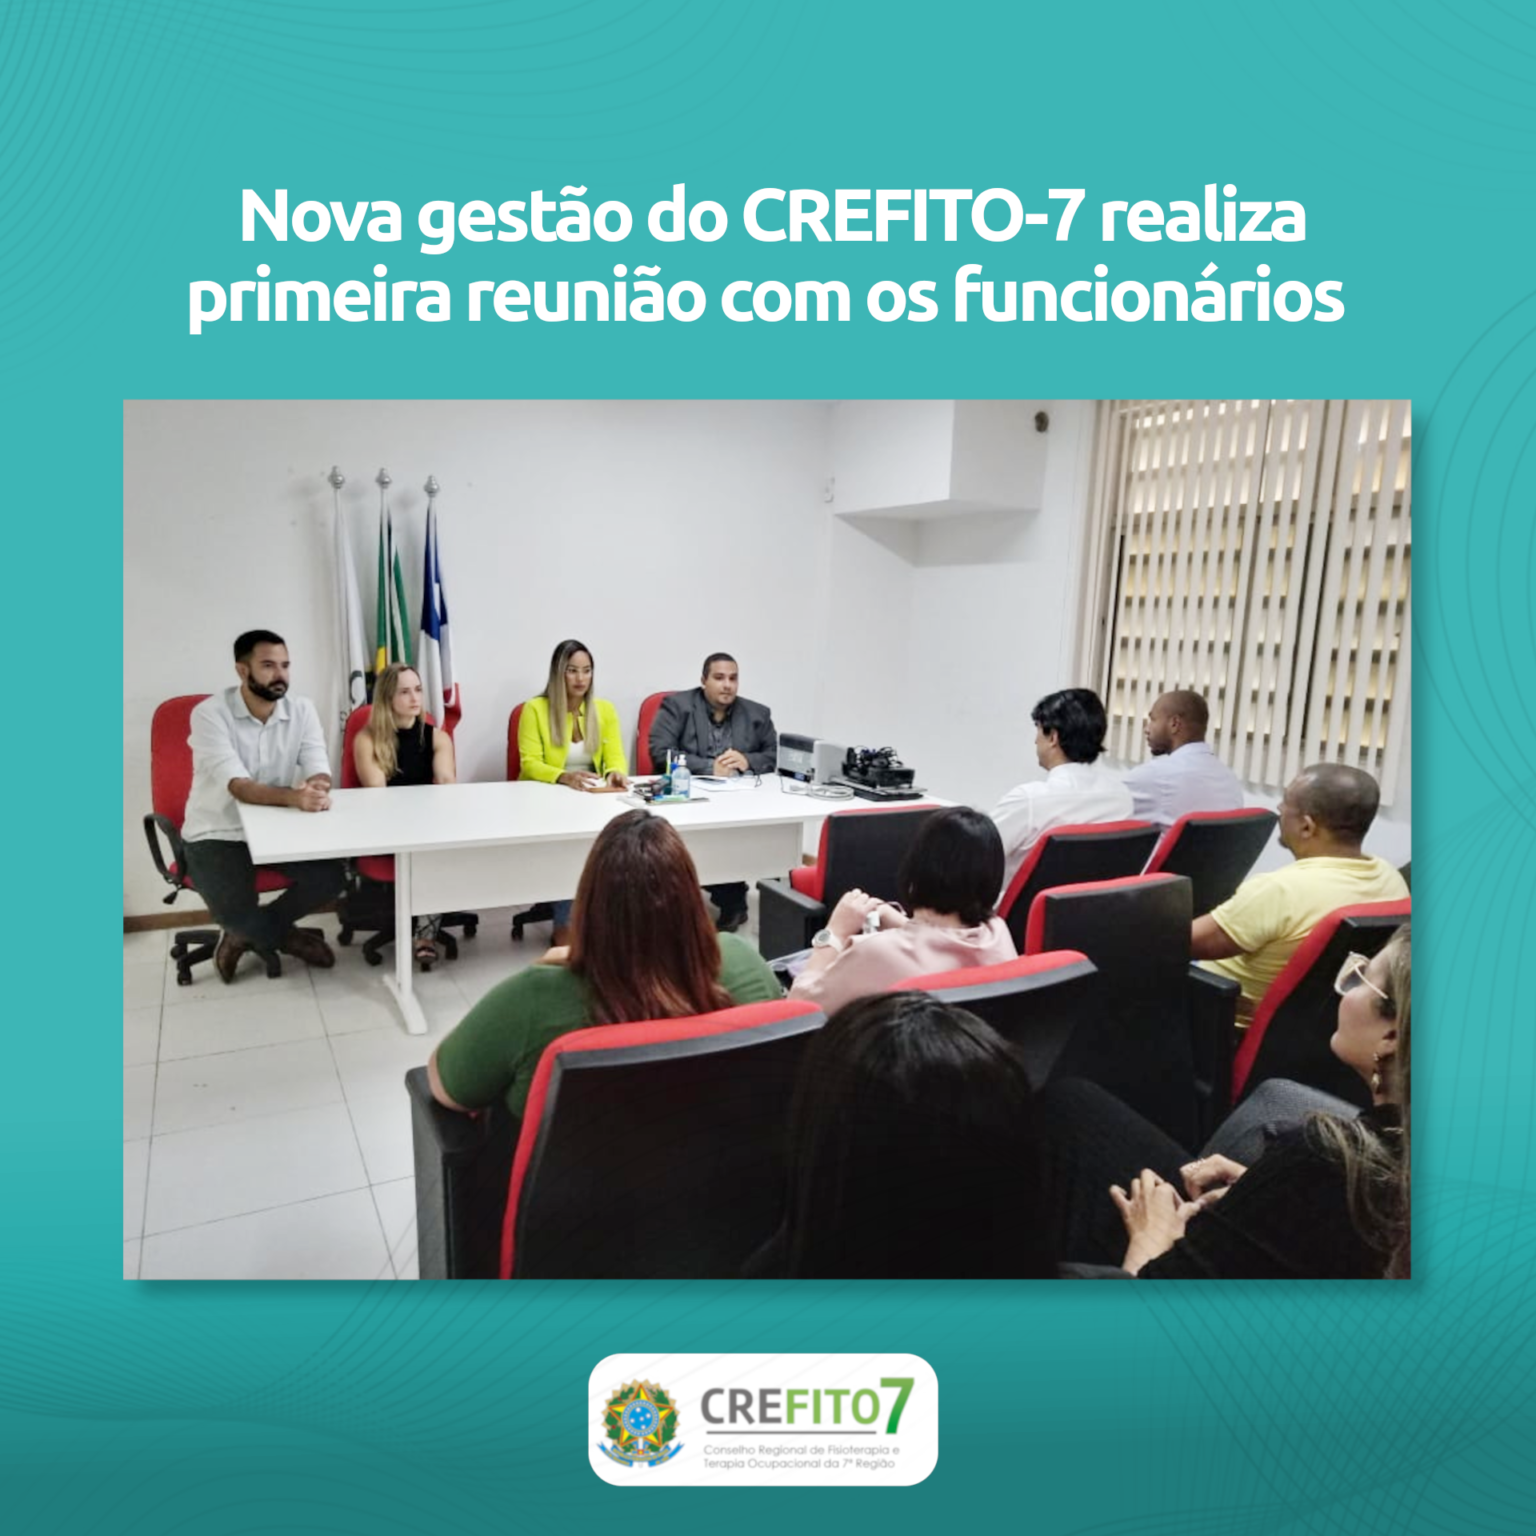 Nova gestão do CREFITO-7 realiza primeira reunião com os funcionários